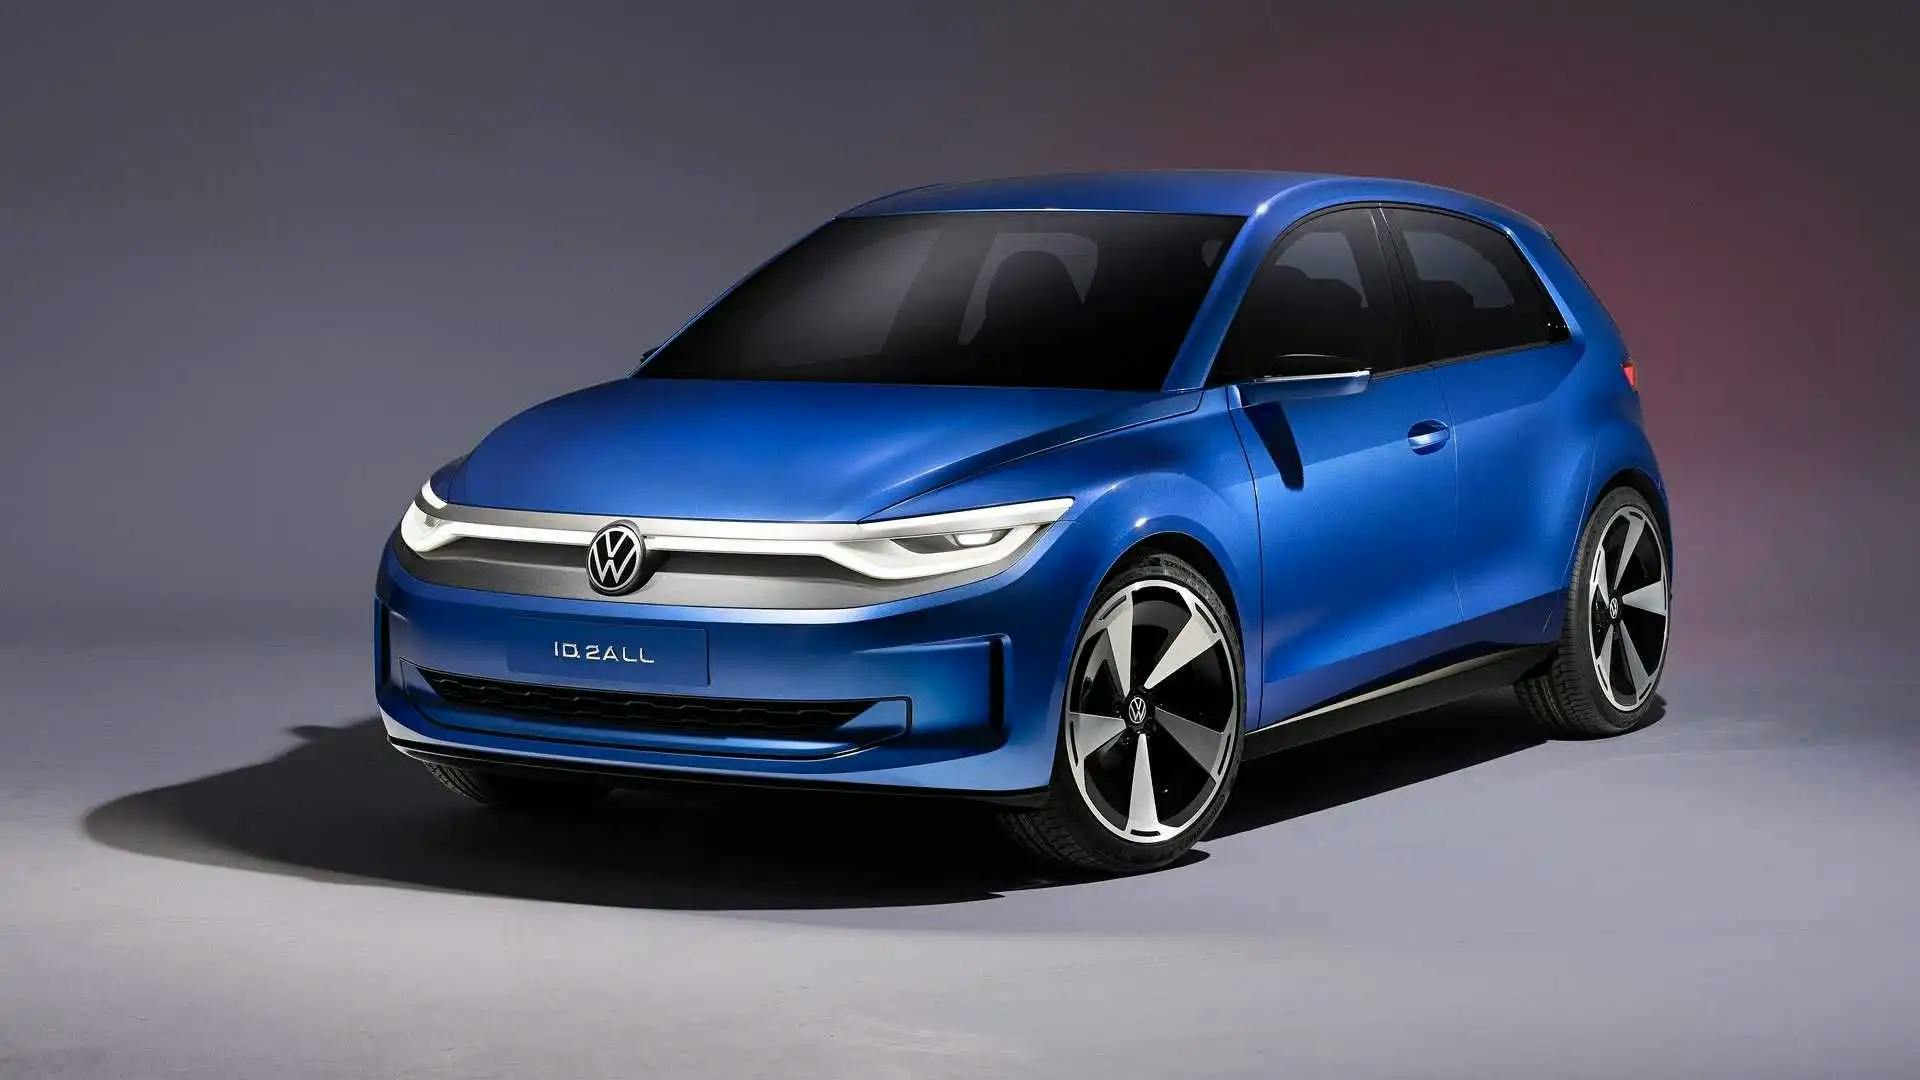 Conceptul VW ID.2all prefigurează o mașină electrică de serie ieftin pentru Europa în 2025